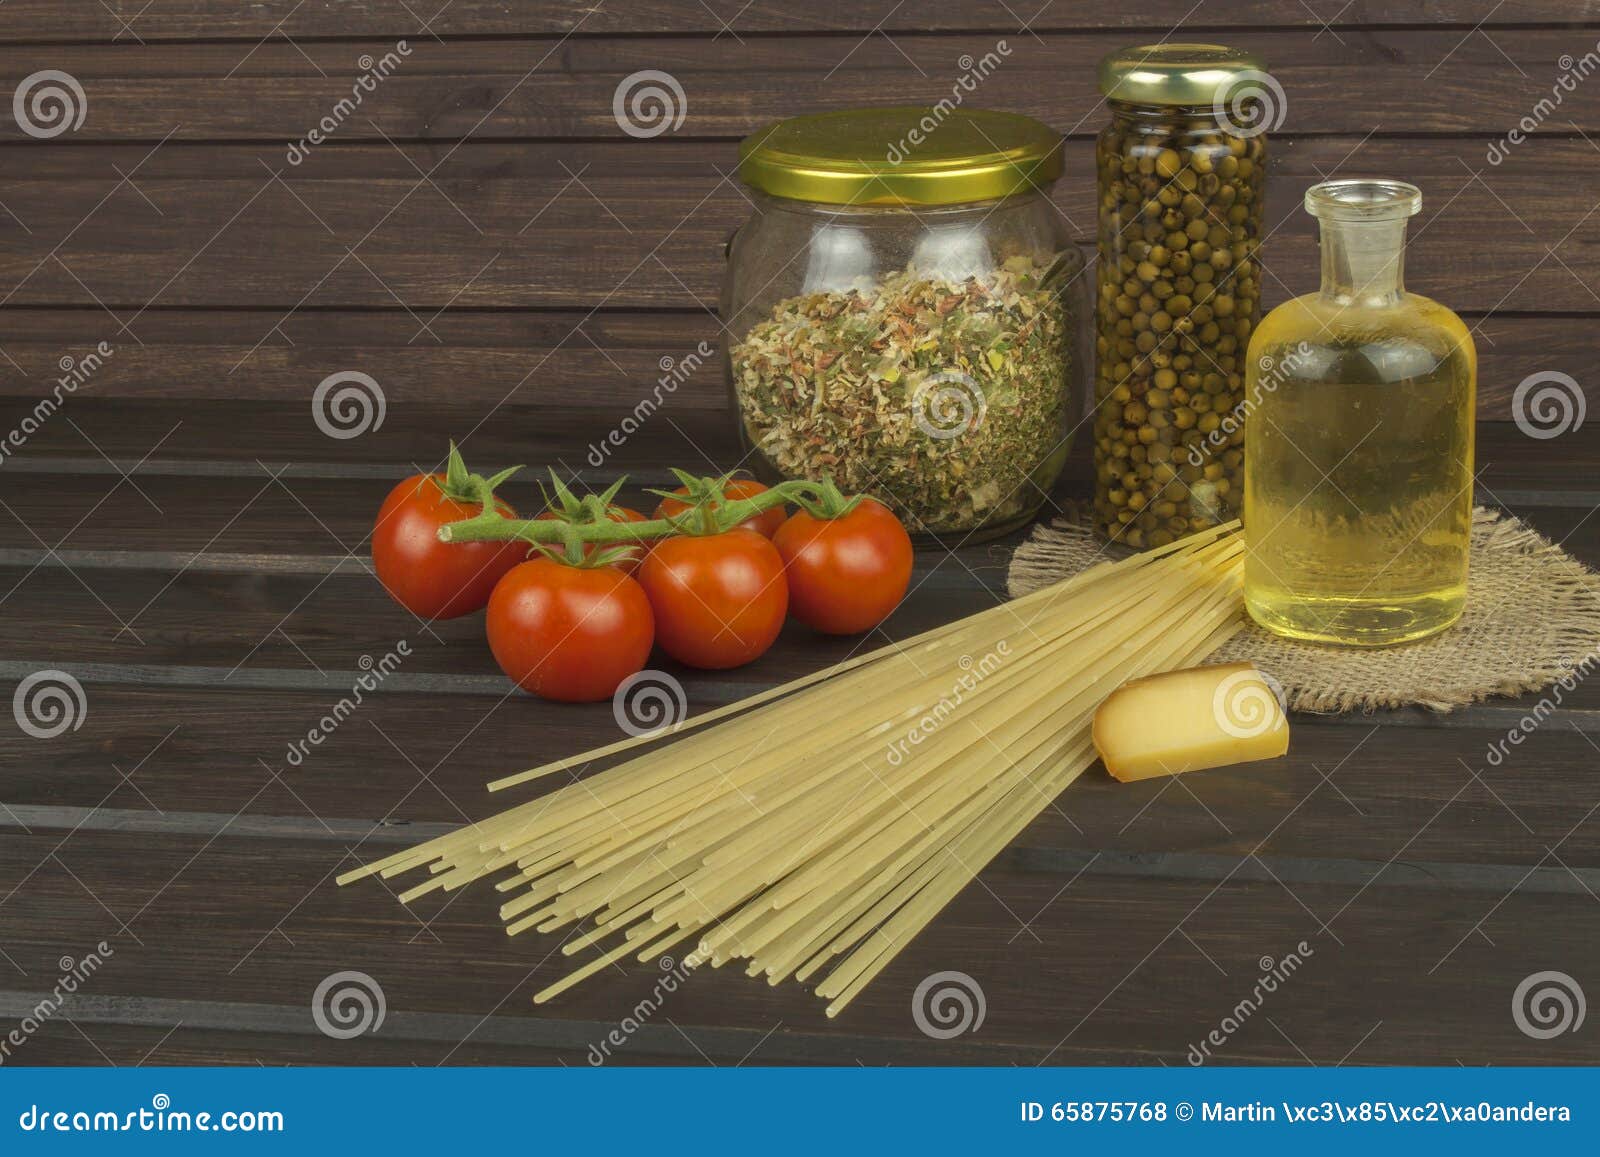 Подготавливать домодельные макаронные изделия Макаронные изделия и овощи на деревянном столе диетическая еда Макаронные изделия, томаты, лук, оливковое масло и базилик на деревянной предпосылке